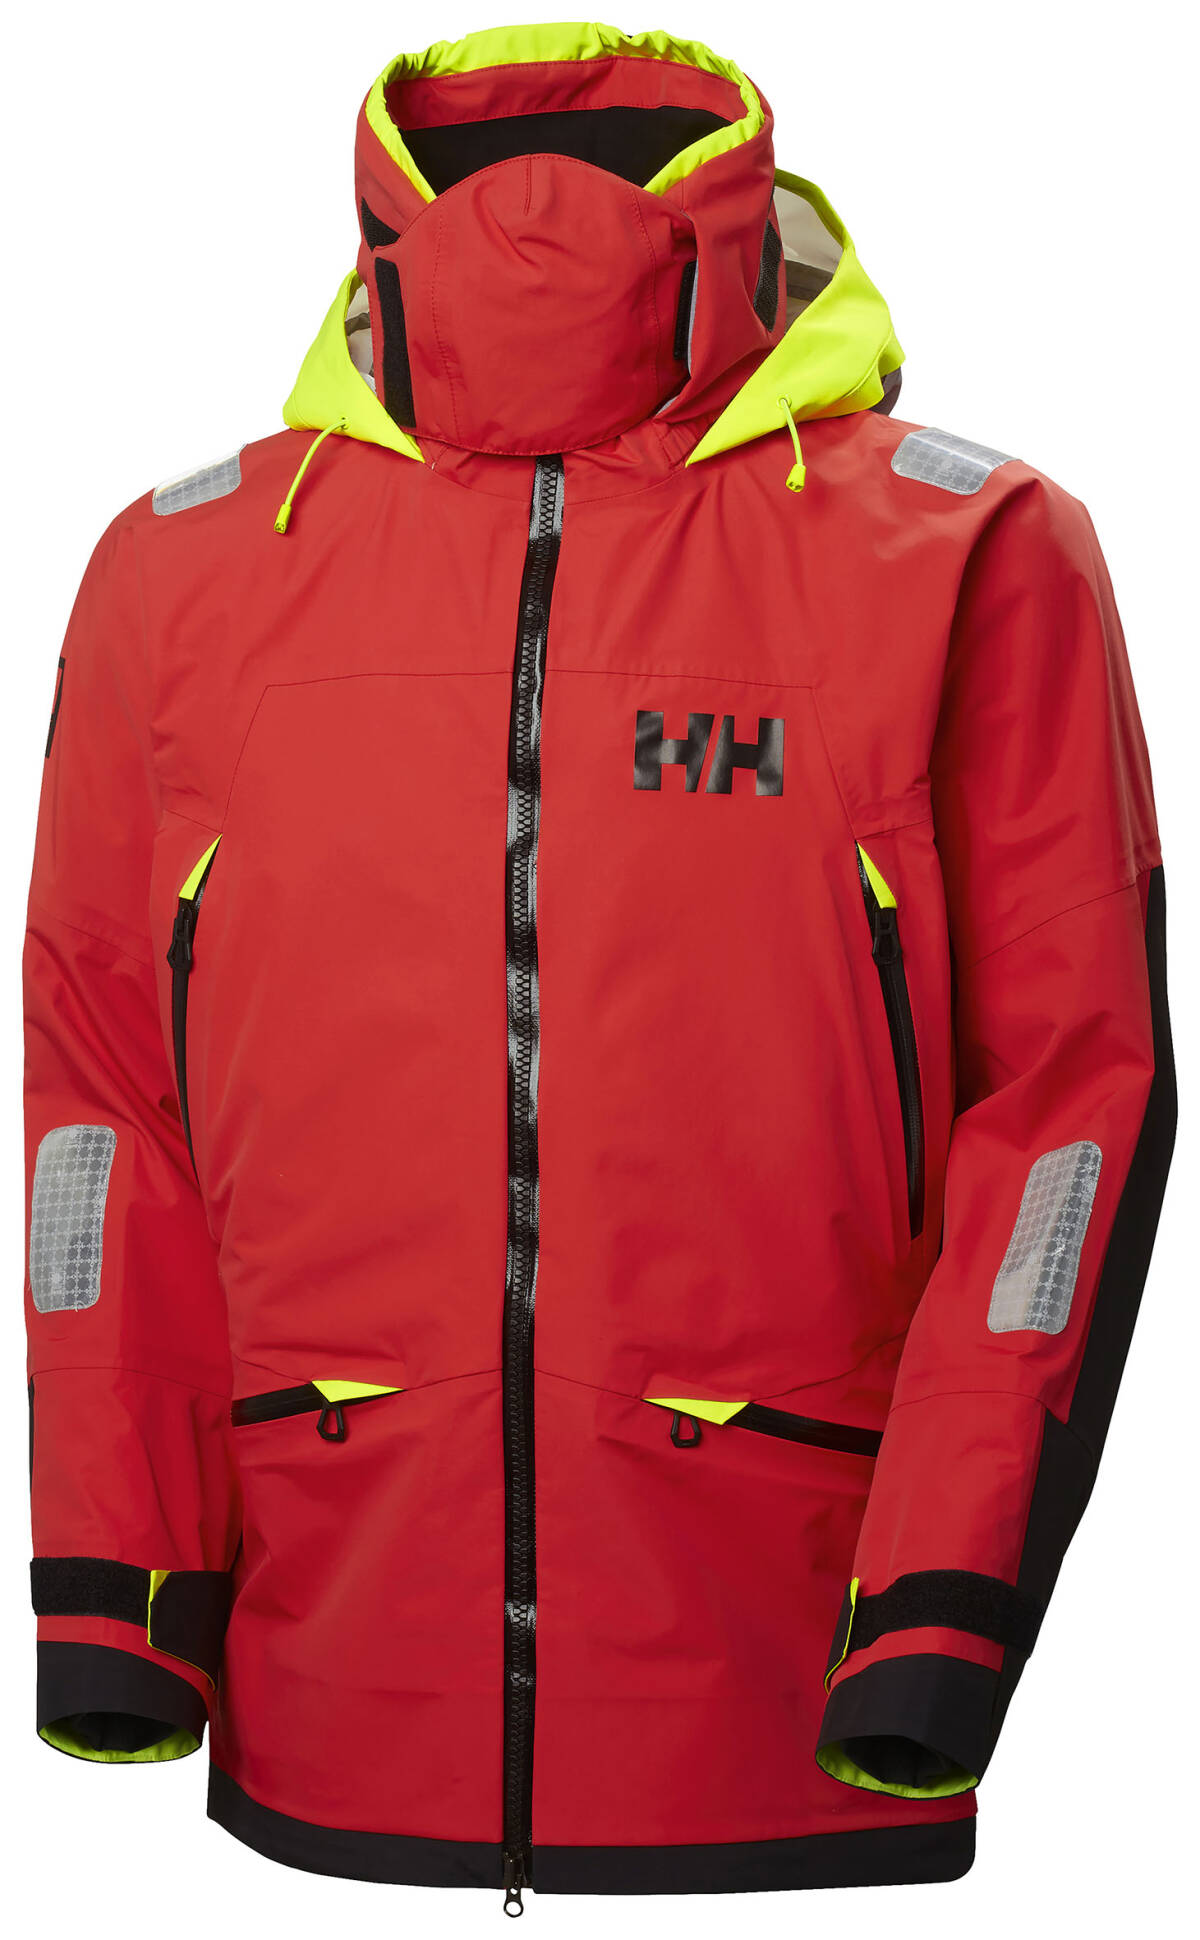 La nueva chaqueta náutica Helly Hansen Ægir Race Jacket 2.0 con rendimiento  profesional y el 50% de material reciclado - Plaza Deportiva